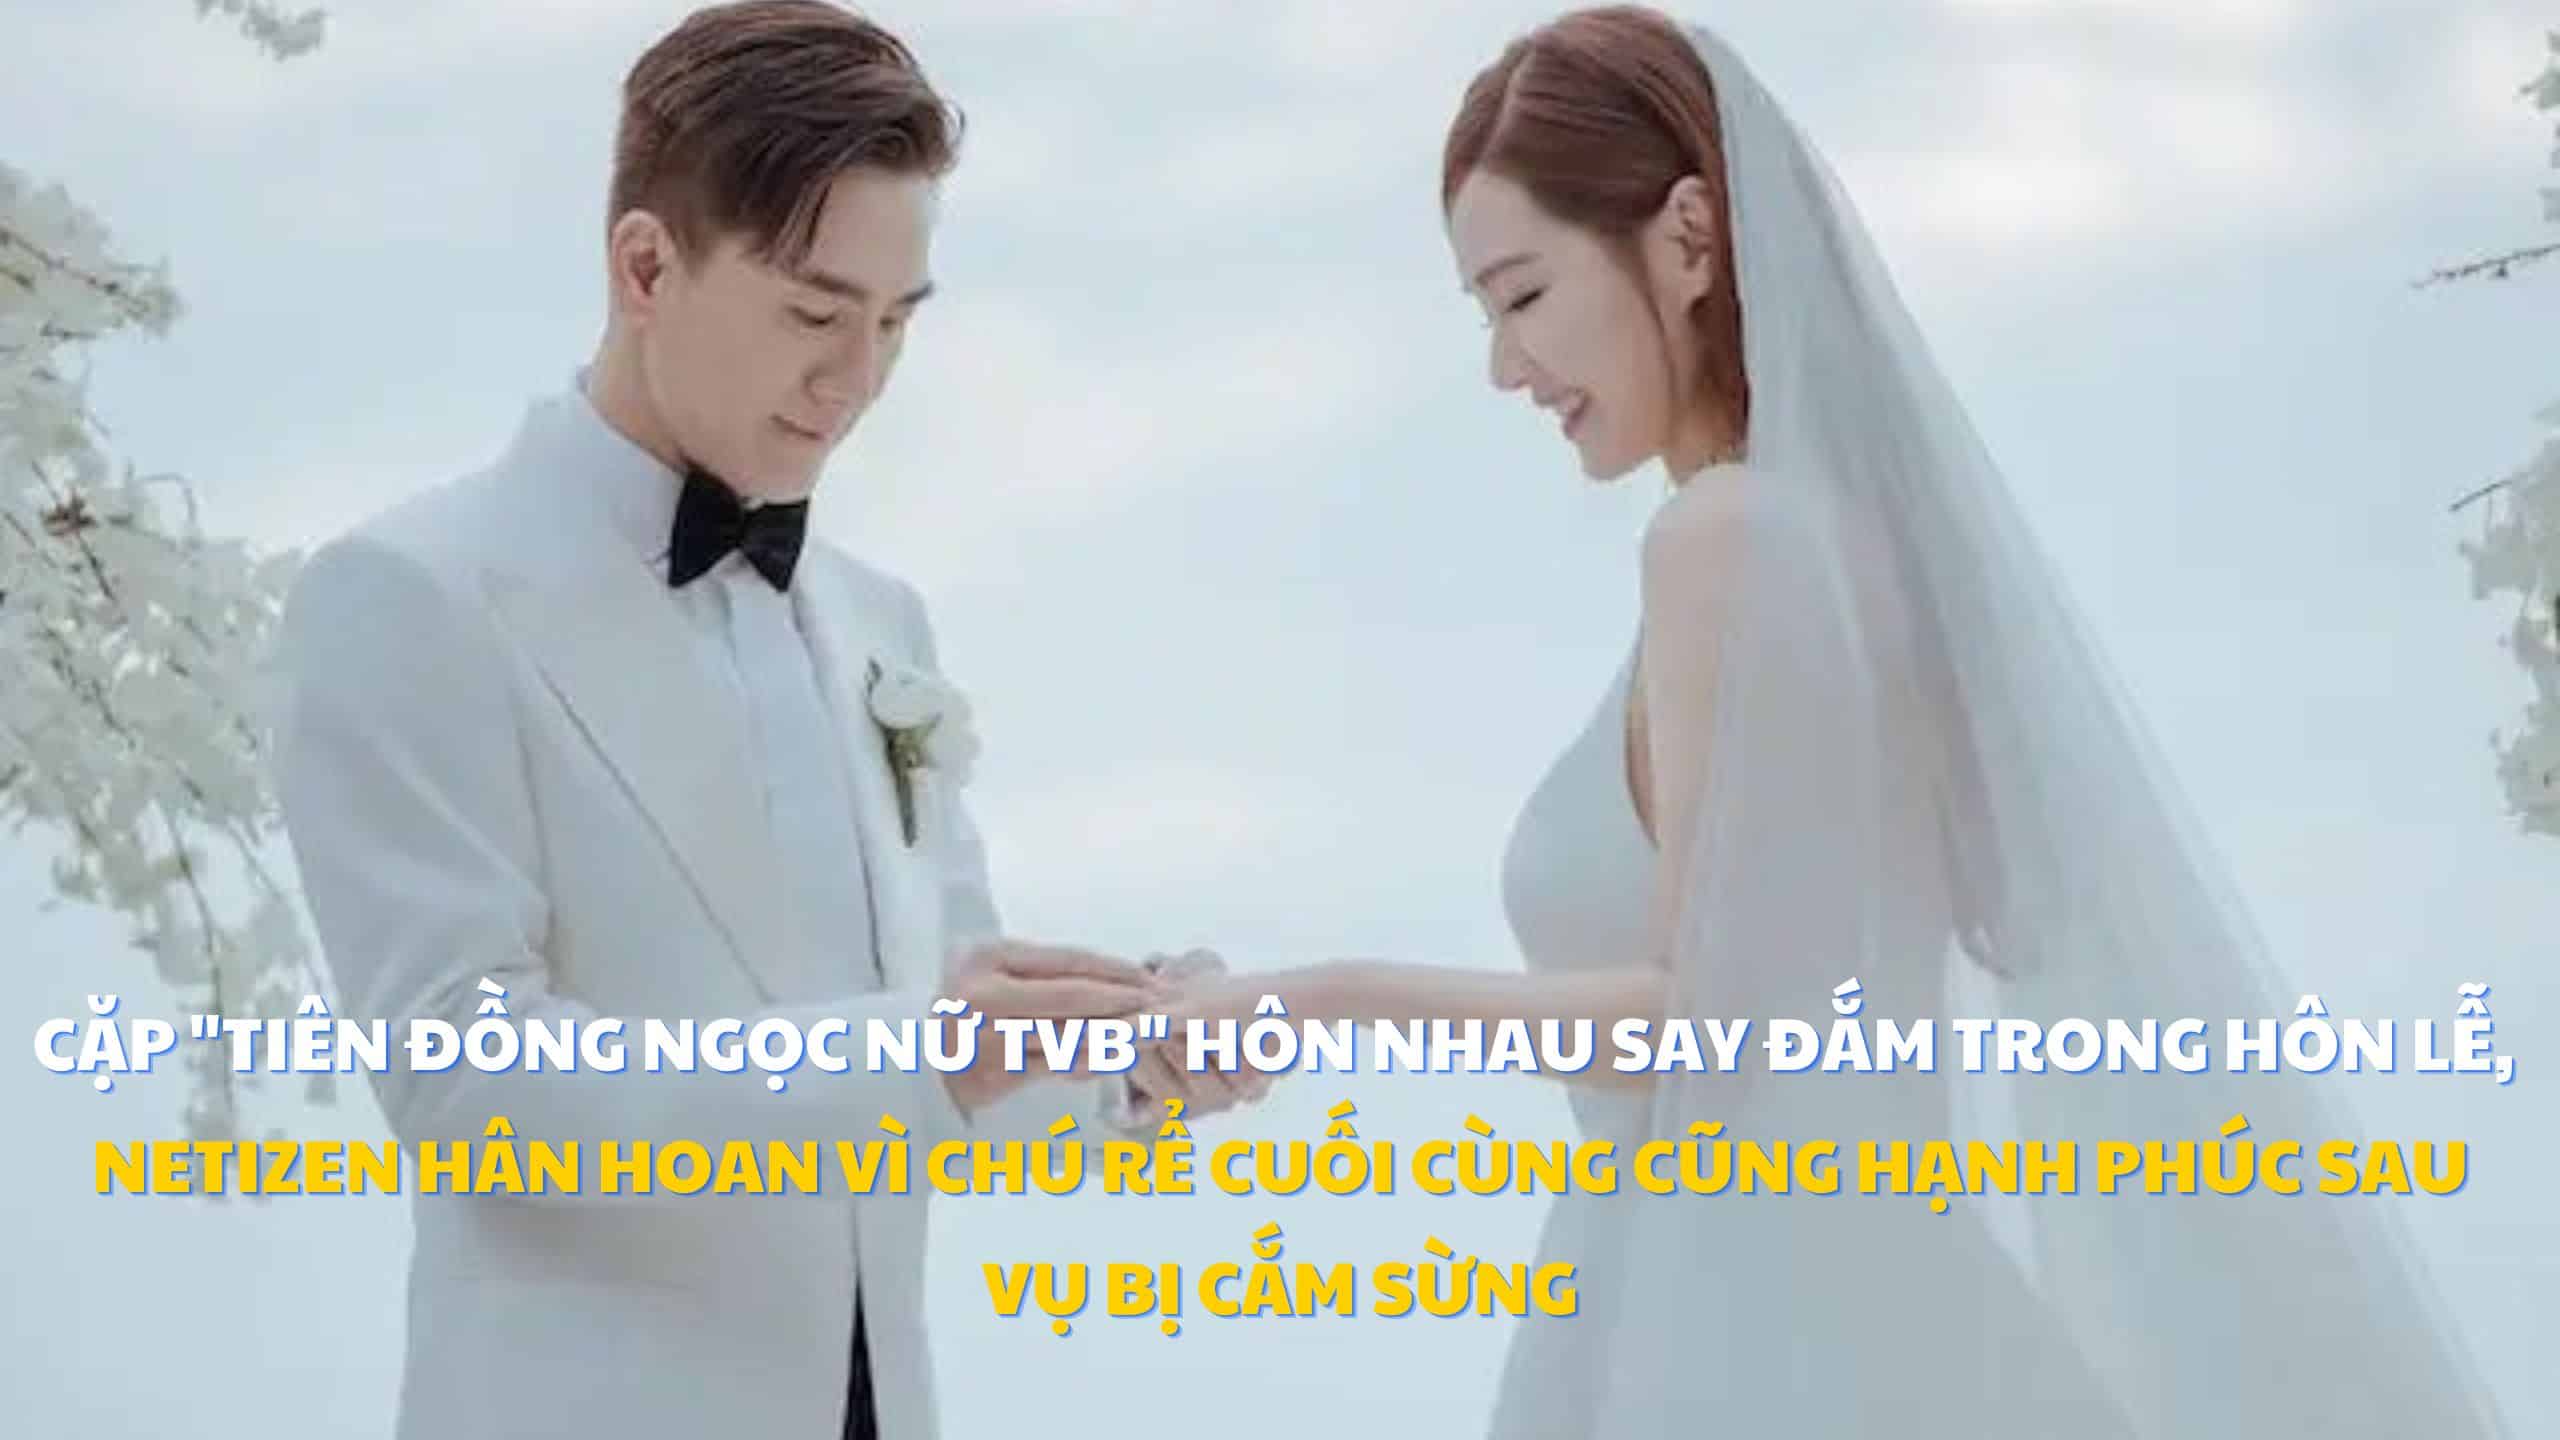 Cặp “tiên đồng ngọc nữ TVB” hôn nhau say đắm trong hôn lễ, netizen hân hoan vì chú rể cuối cùng cũng hạnh phúc sau vụ bị cắm sừng